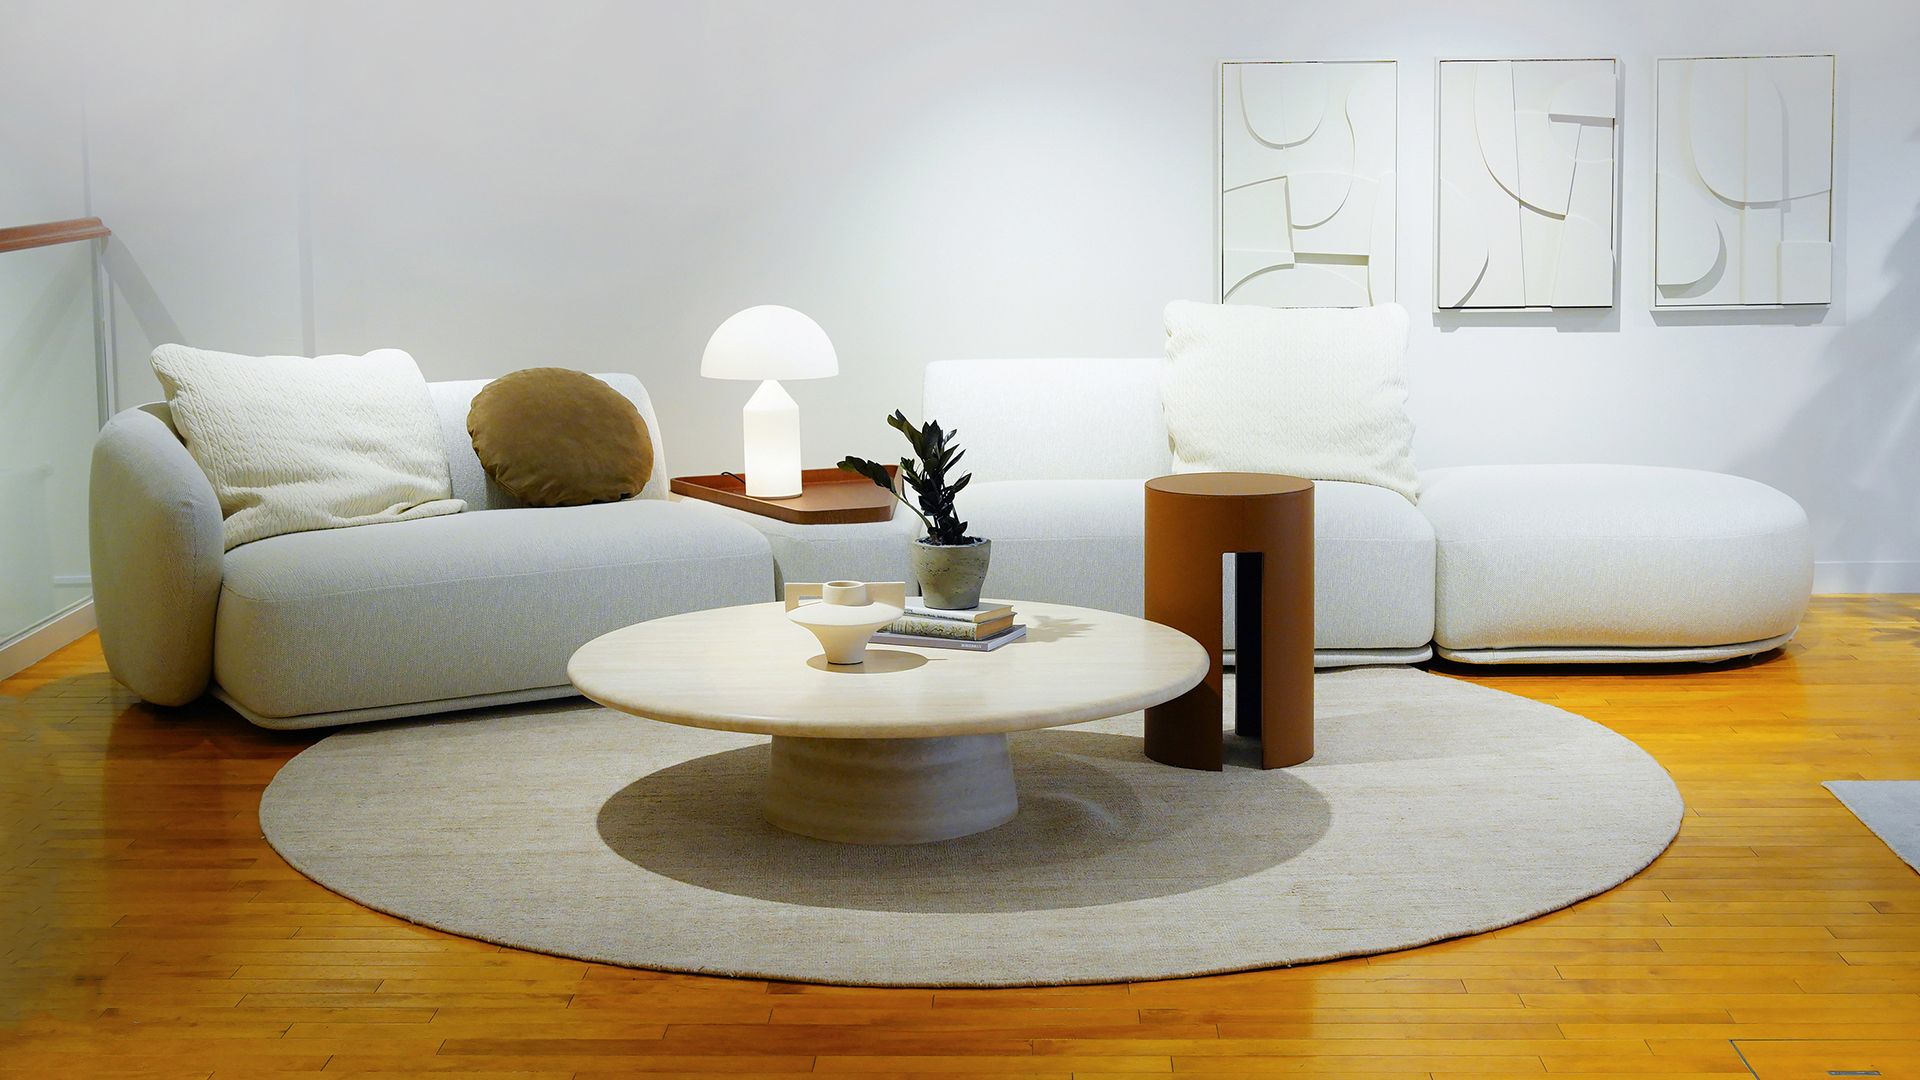 イタリア家具ブランド、メリディアーニのショールームが東京 ...